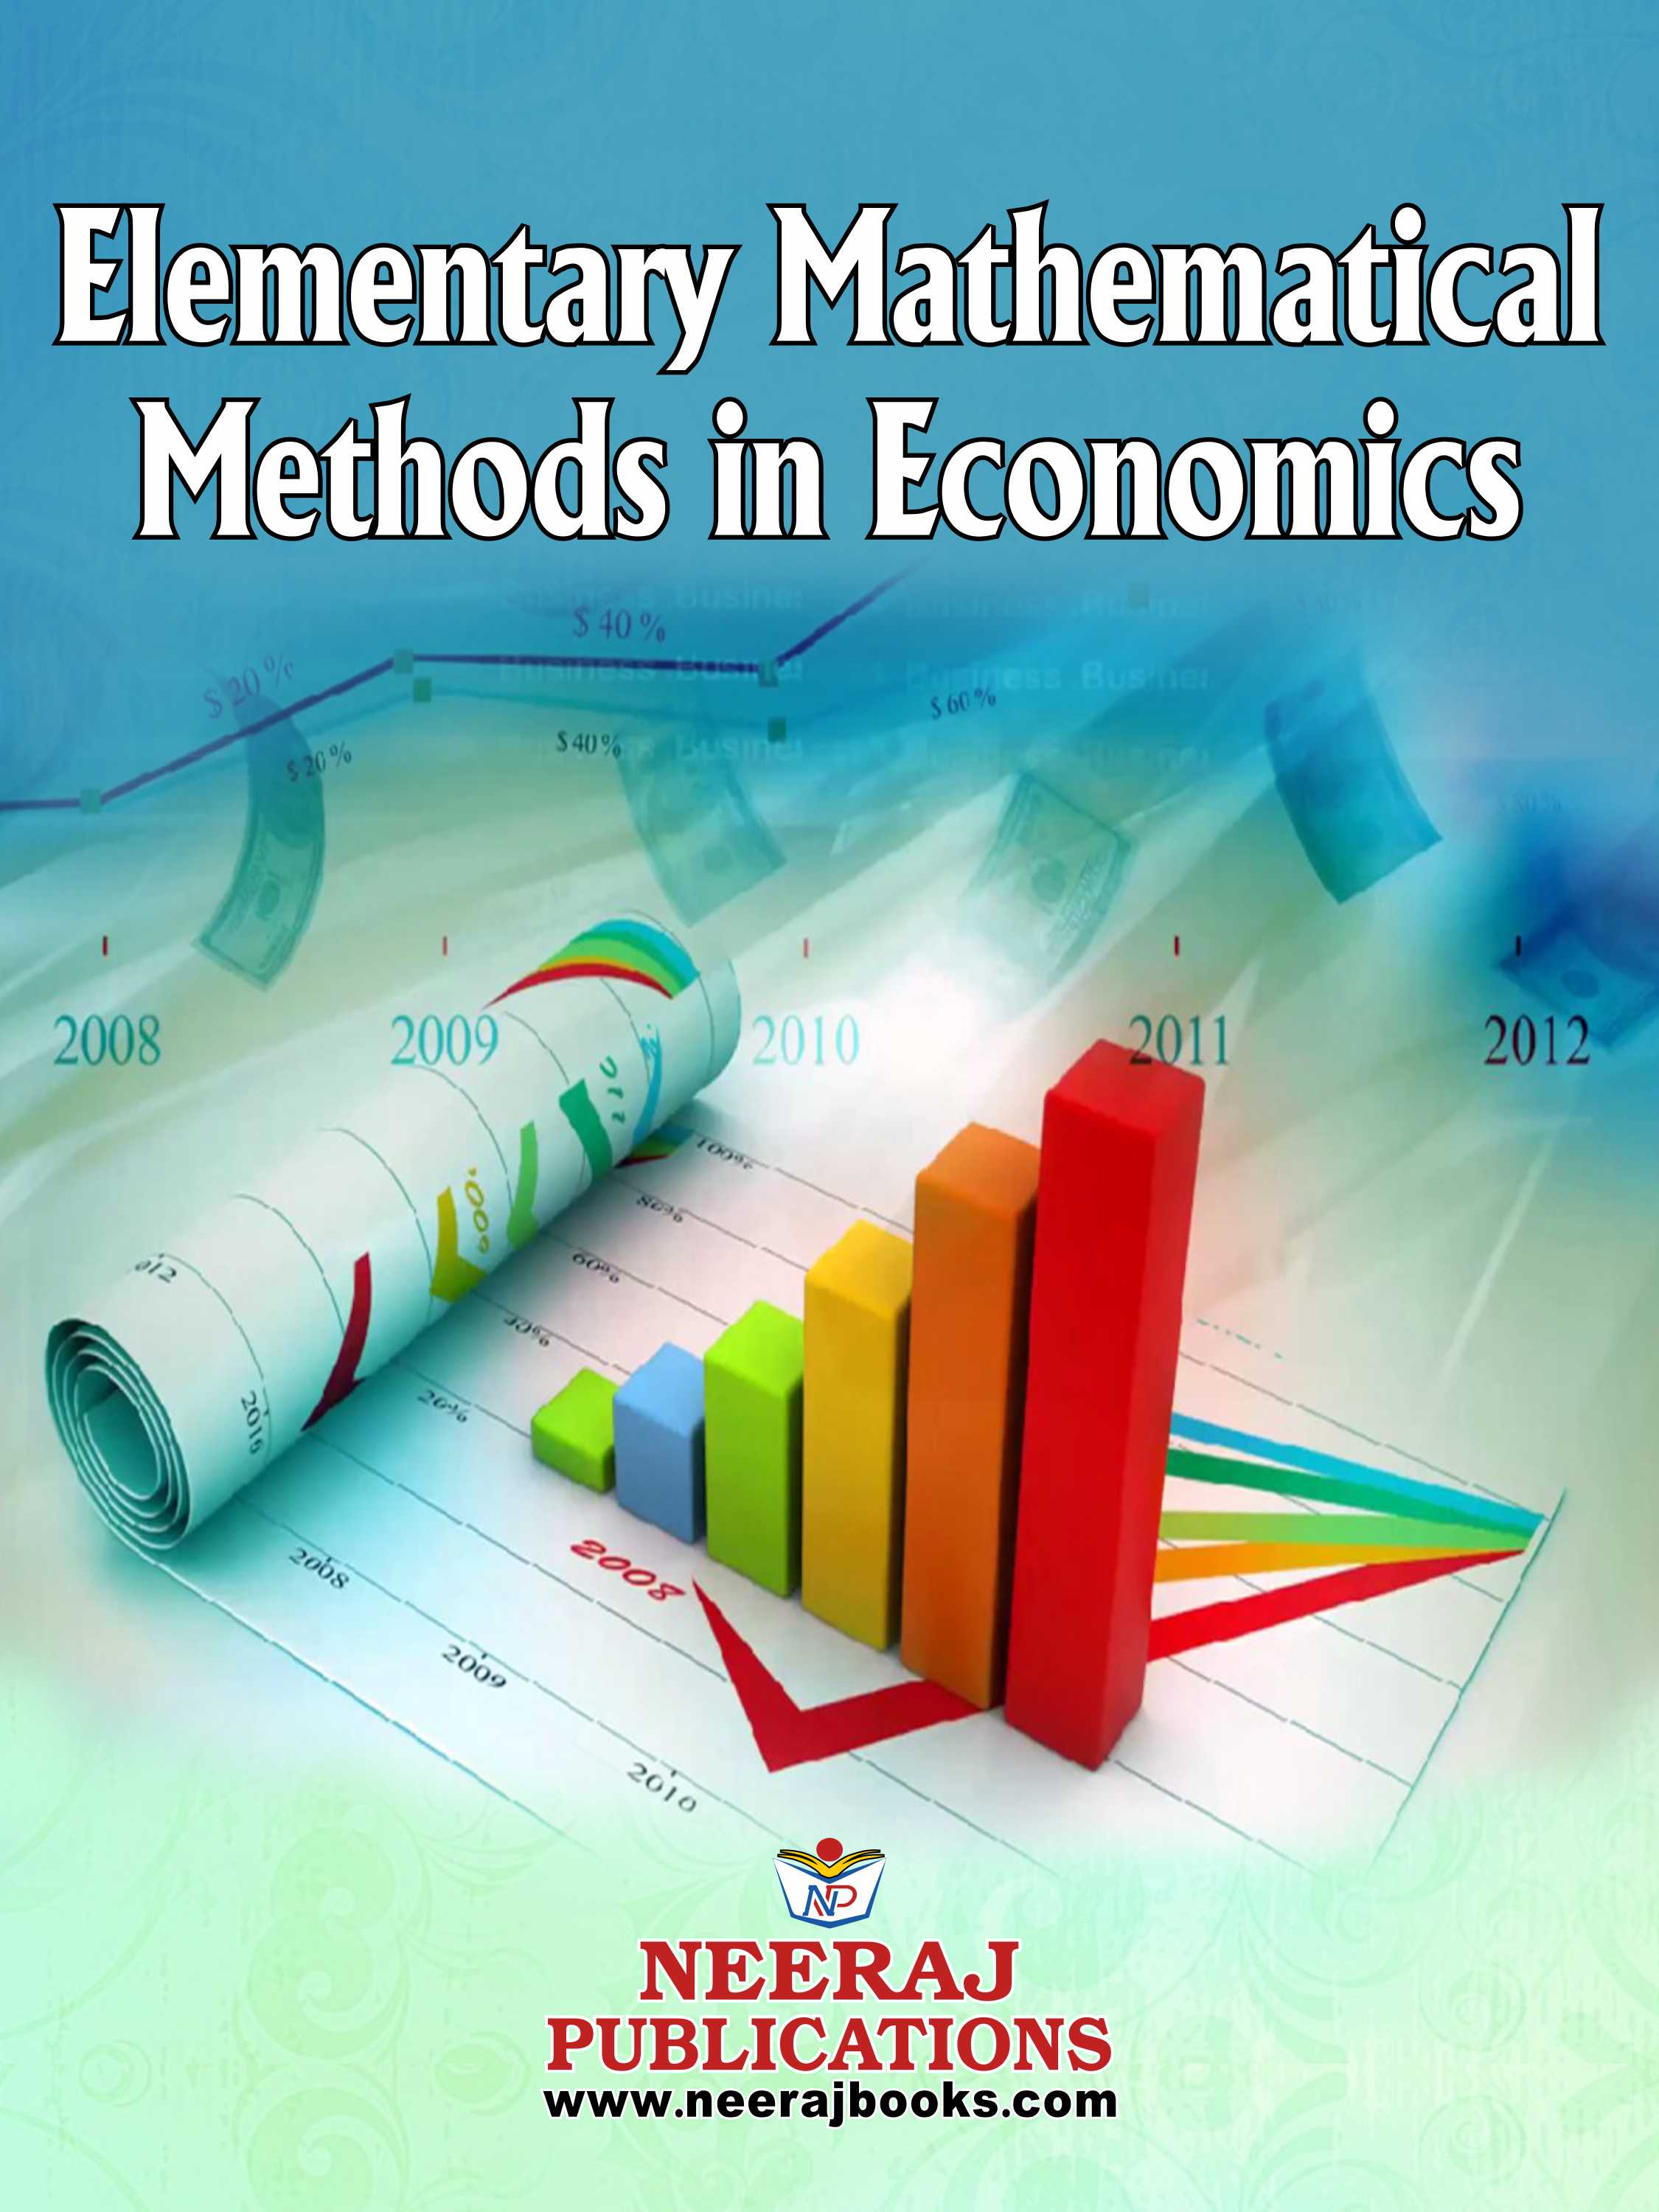 Elementary Mathematical Methods in Economics